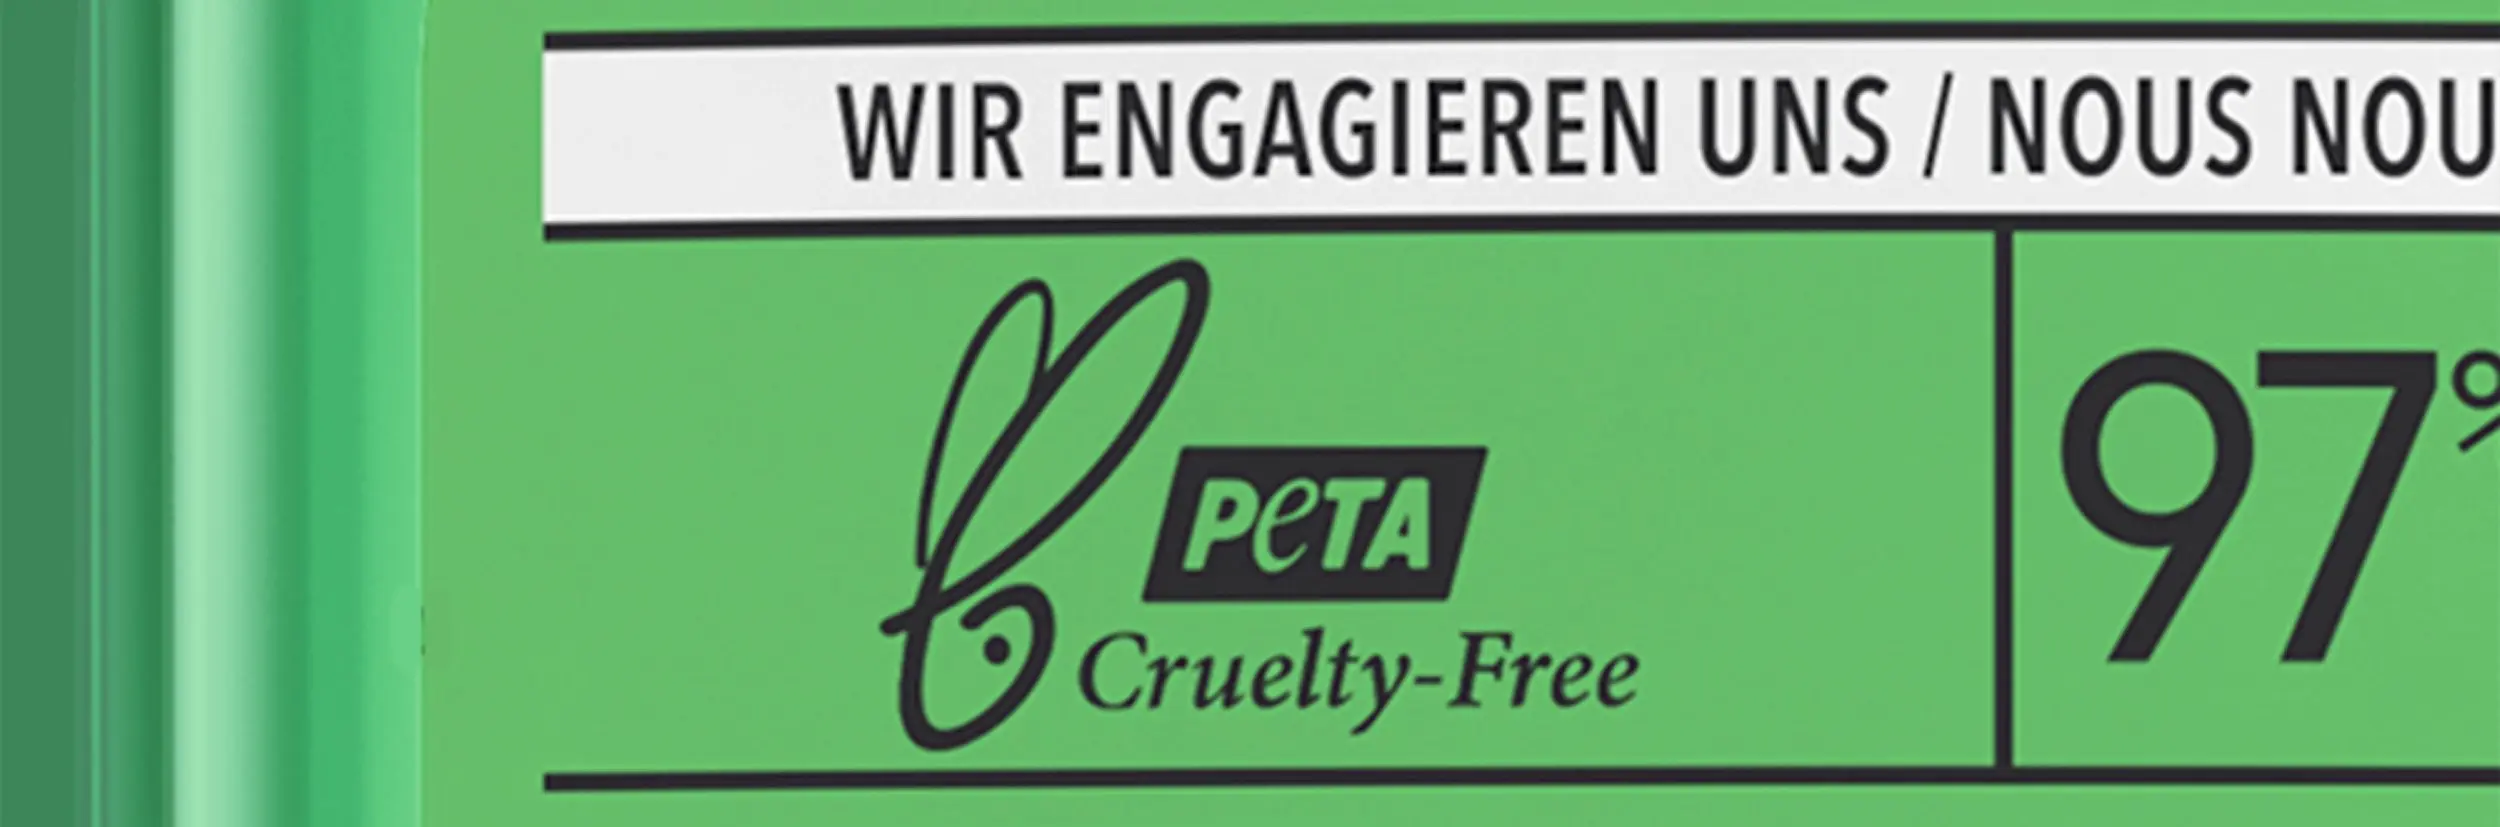 Úspěchy P&G v oblasti ochrany zvířat